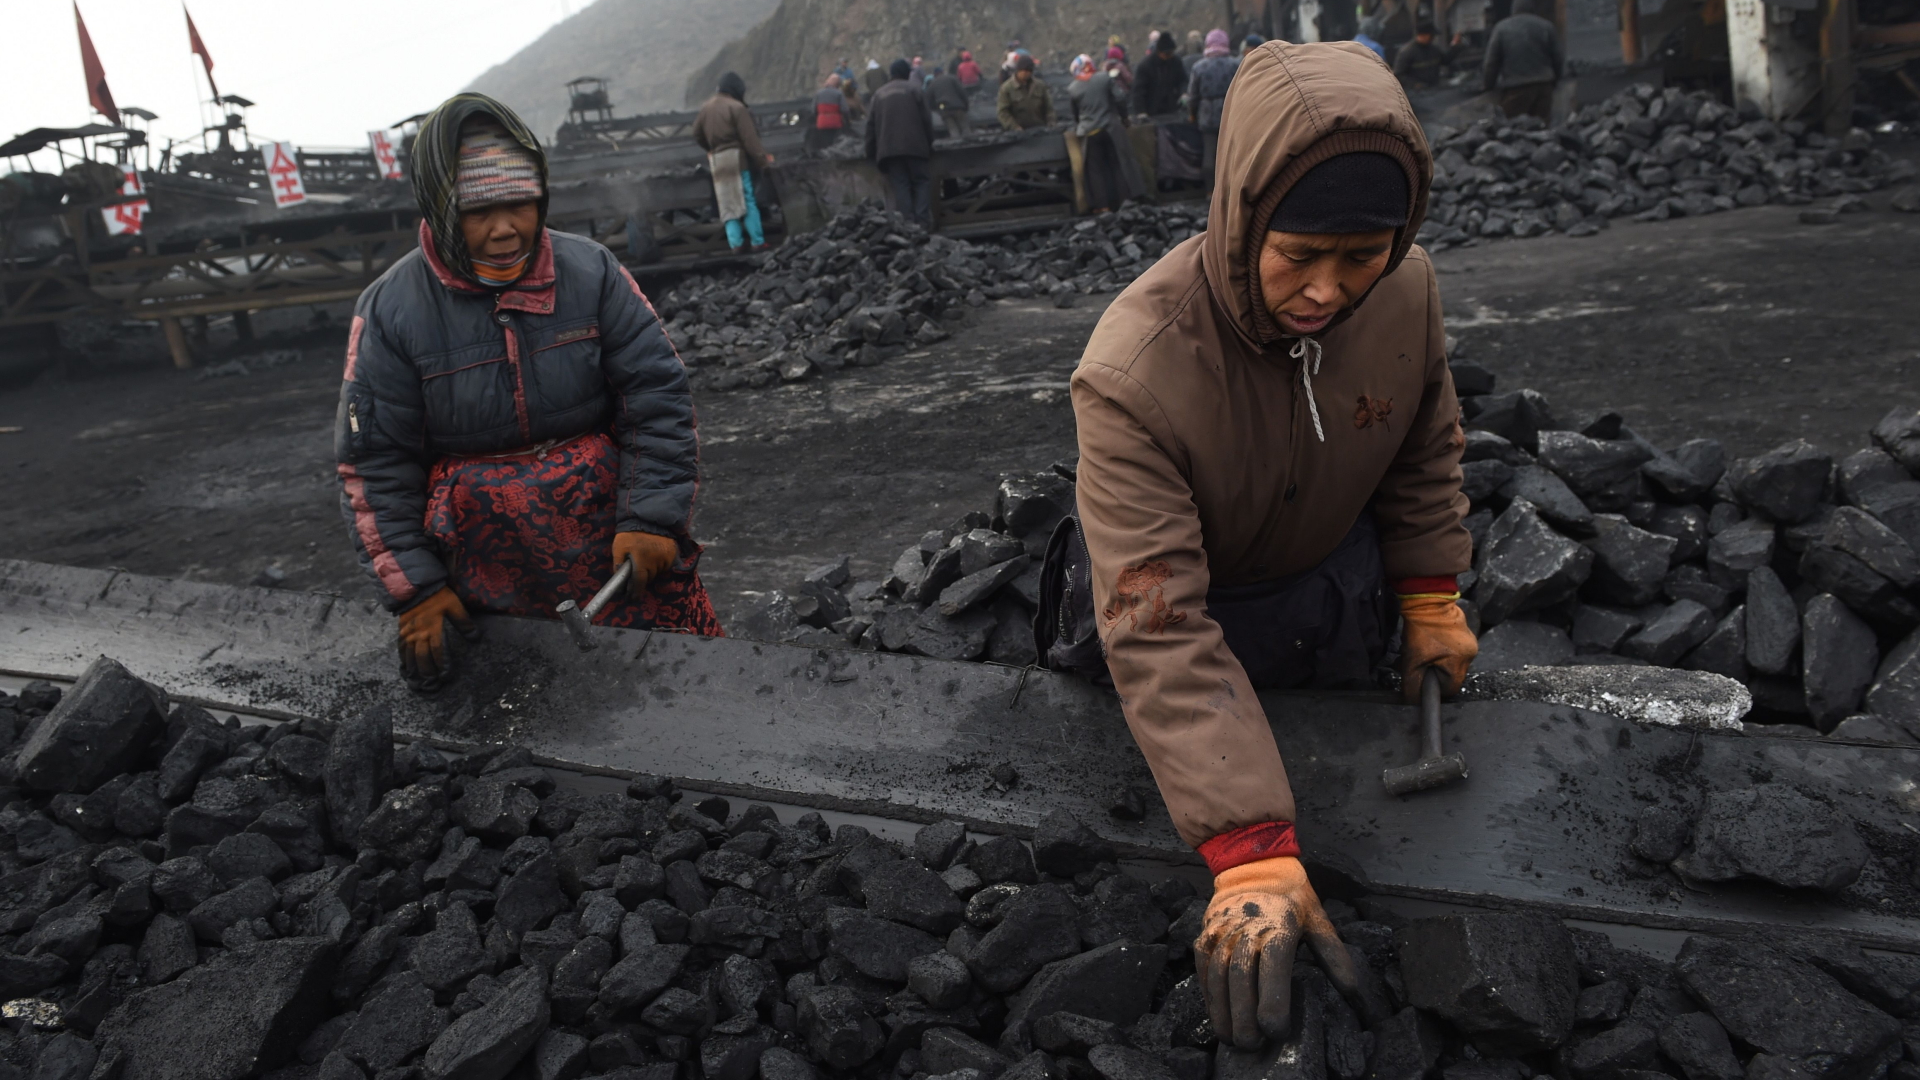 Kohlemine in der chinesischen Provinz Shanxi, Archivbild | AFP